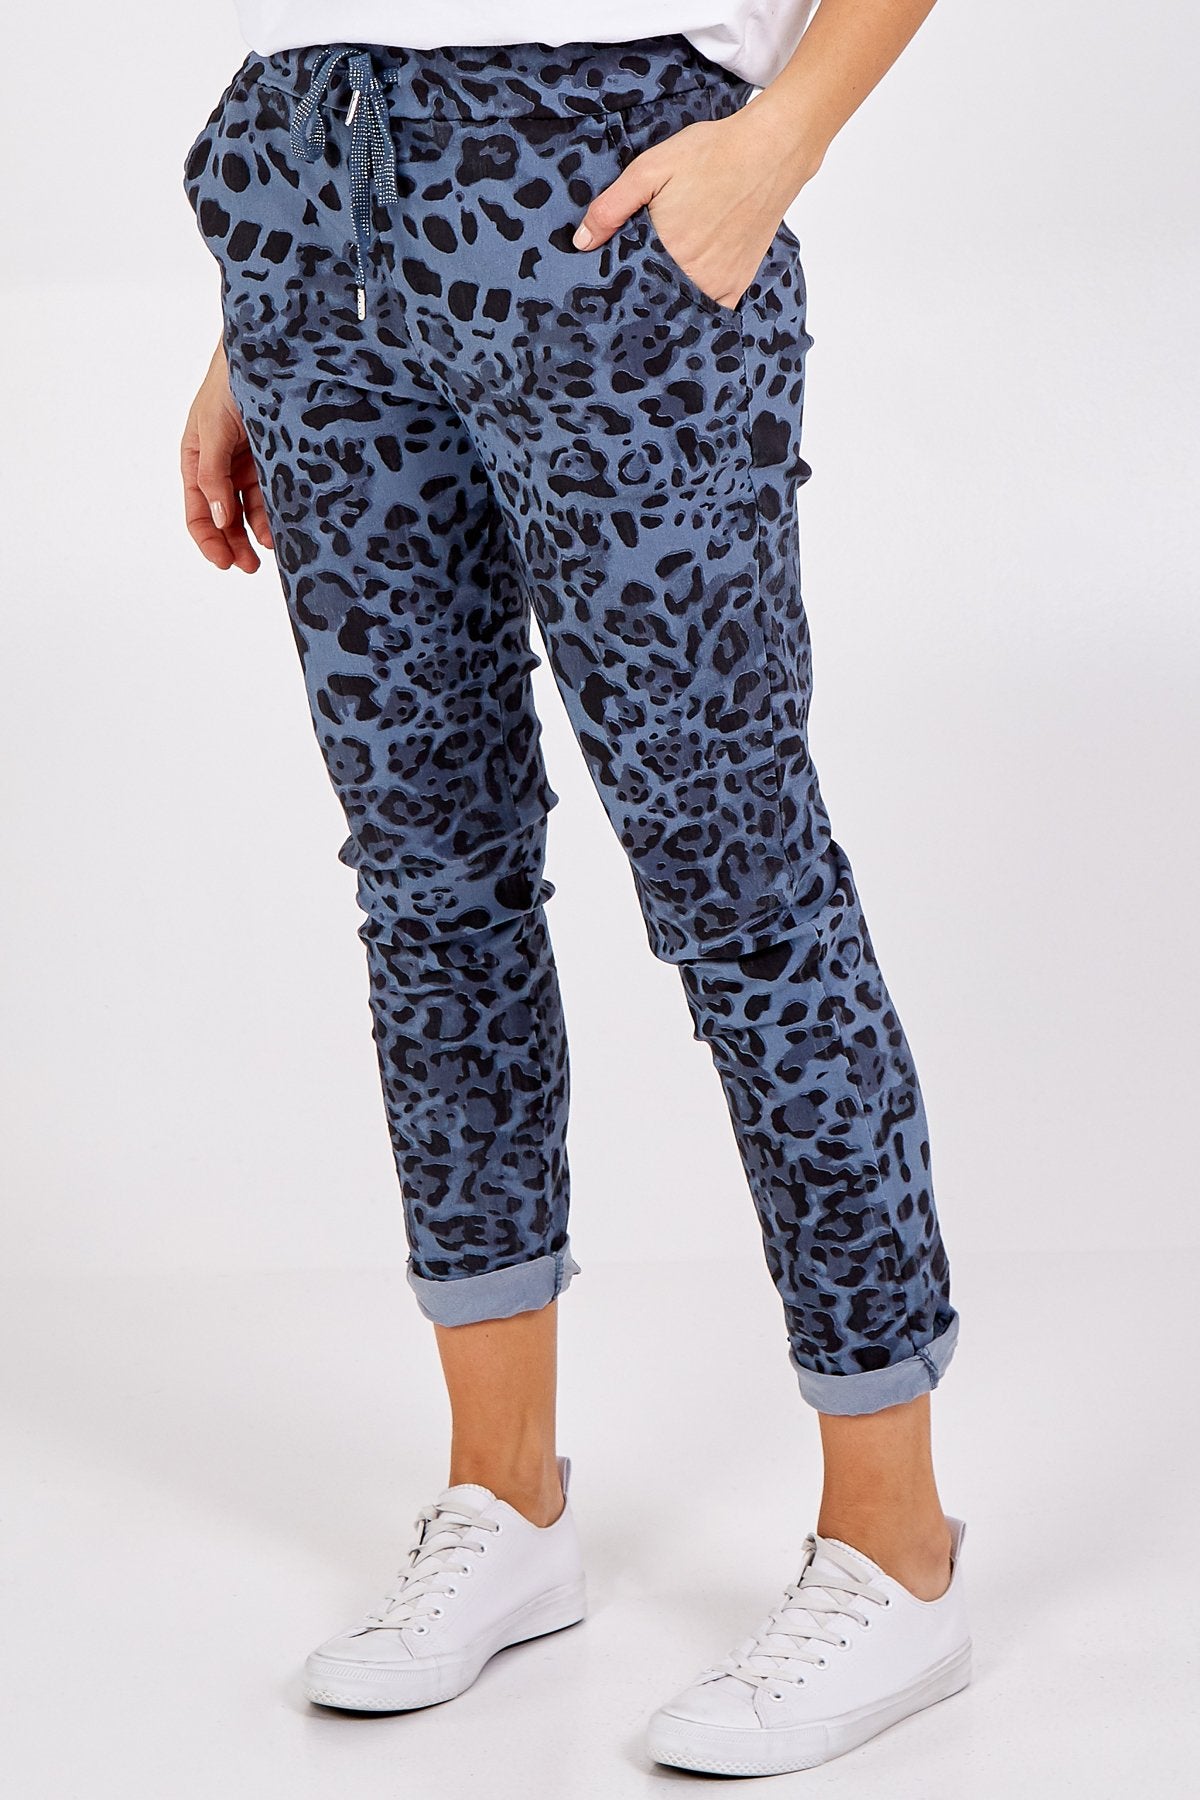 Millie Leopard Print Magic Pants - Denim Blue